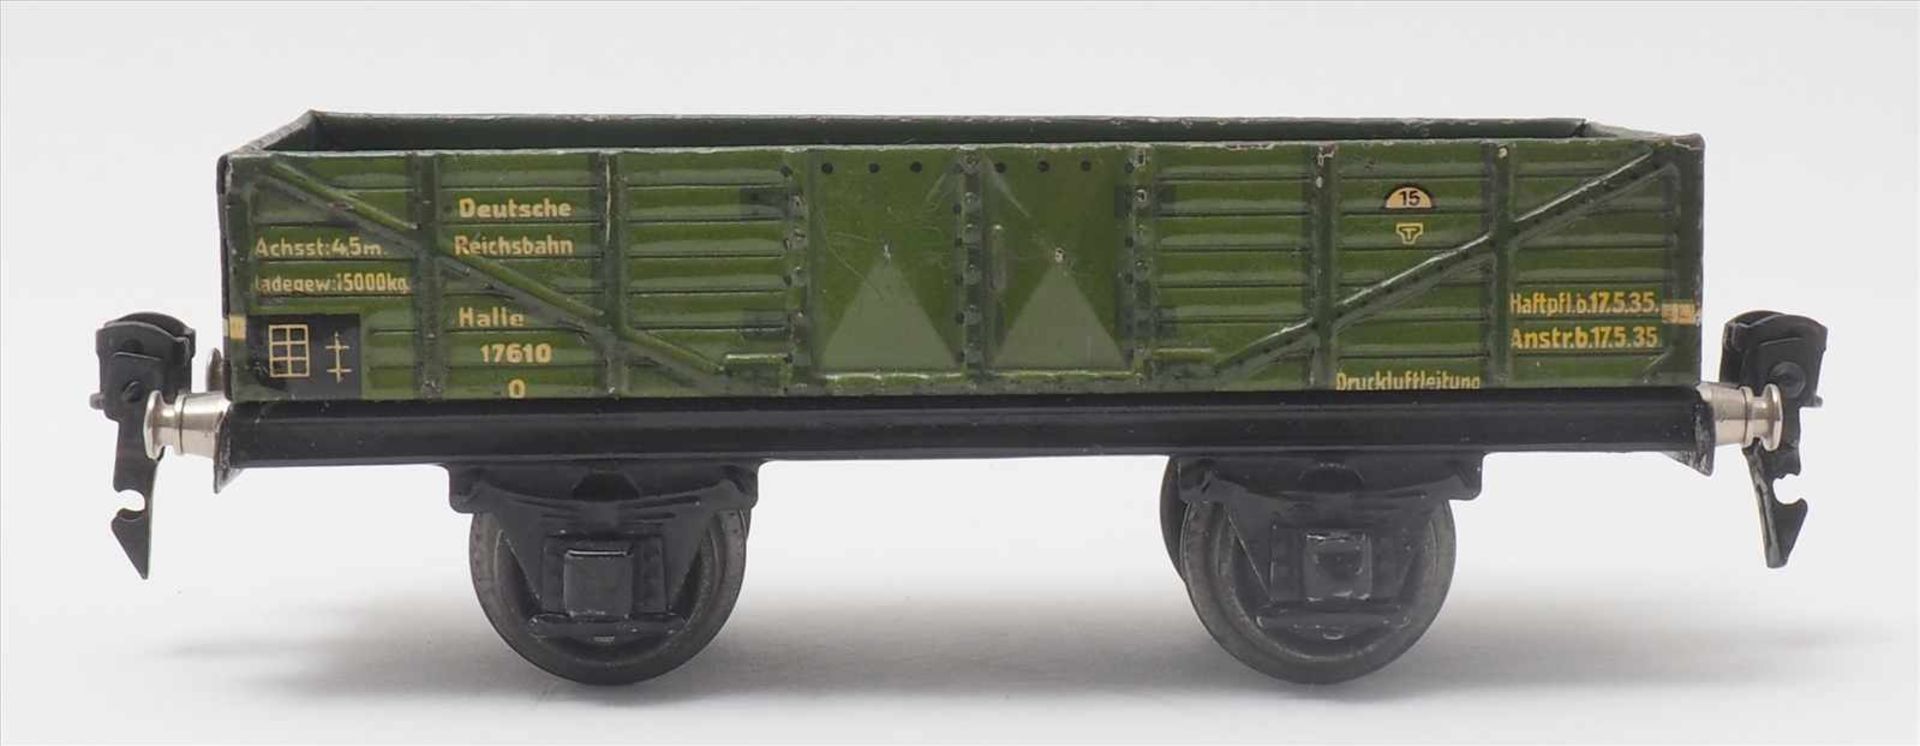 Zwei GüterwagenMärklin Spur 0. 1930-er Jahre. Niederbordwagen in grün. Guter, altersbedingter - Bild 3 aus 5